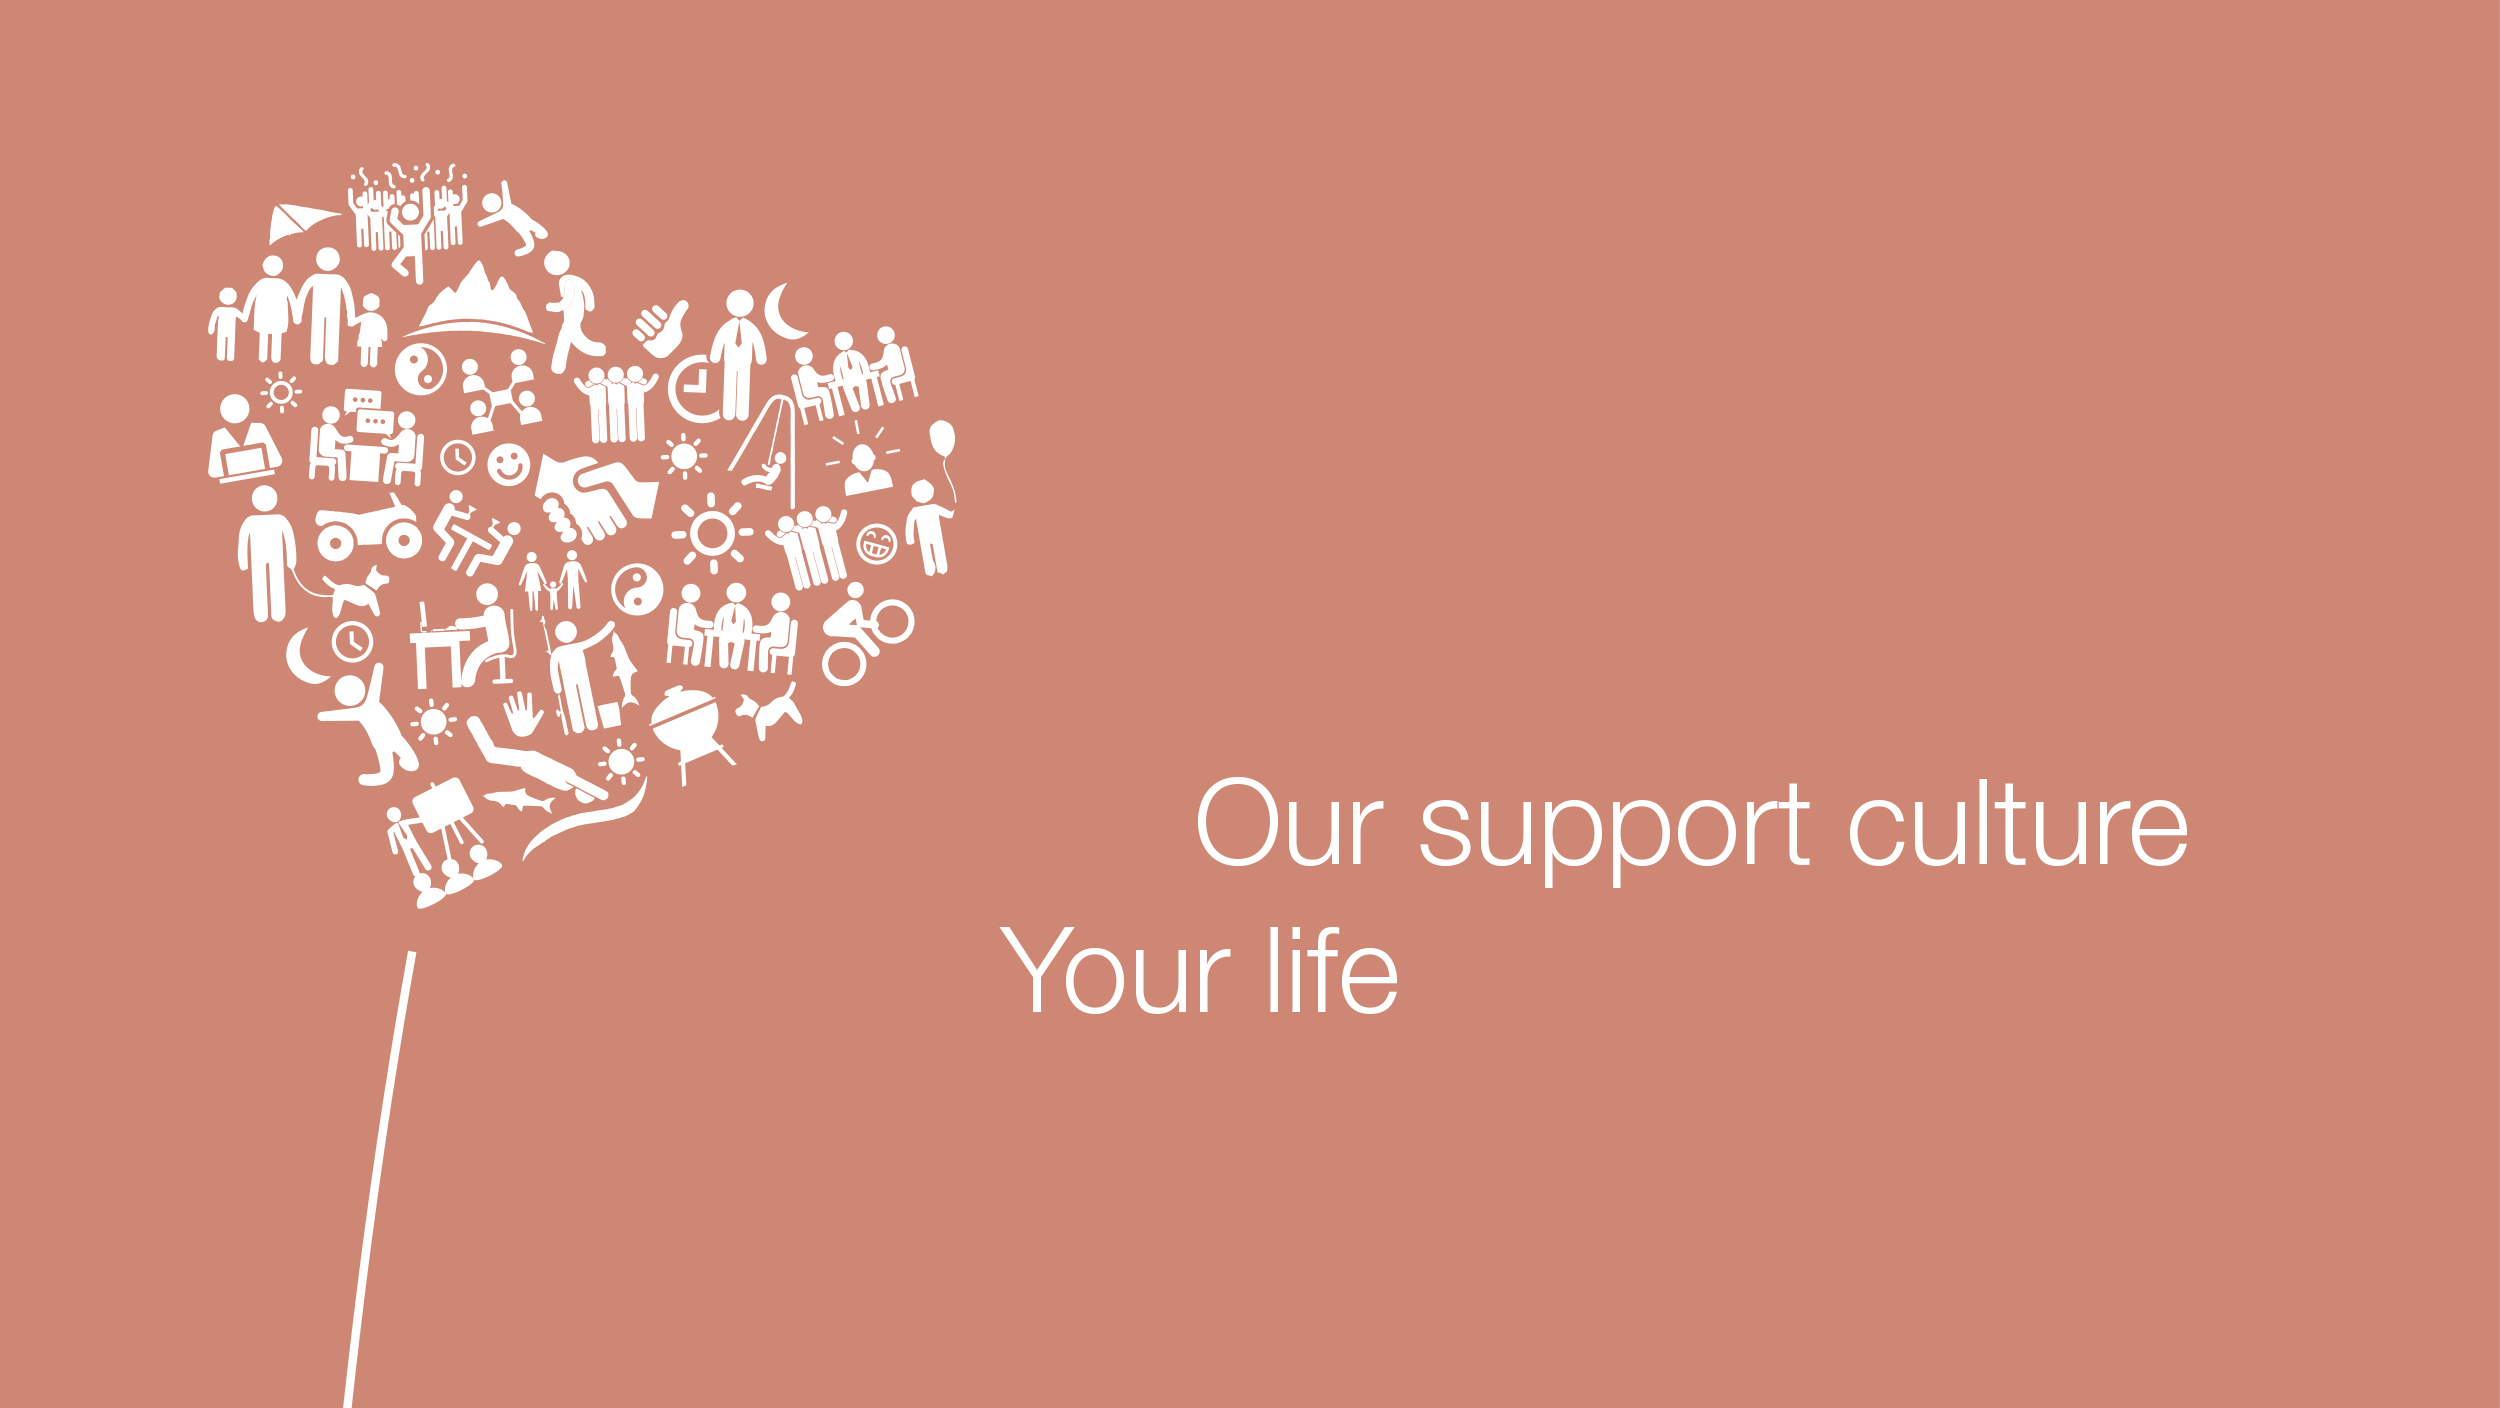 Кульбаба з малюнками сердець поряд зі слоганом: Наша культура підтримки, ваше життя